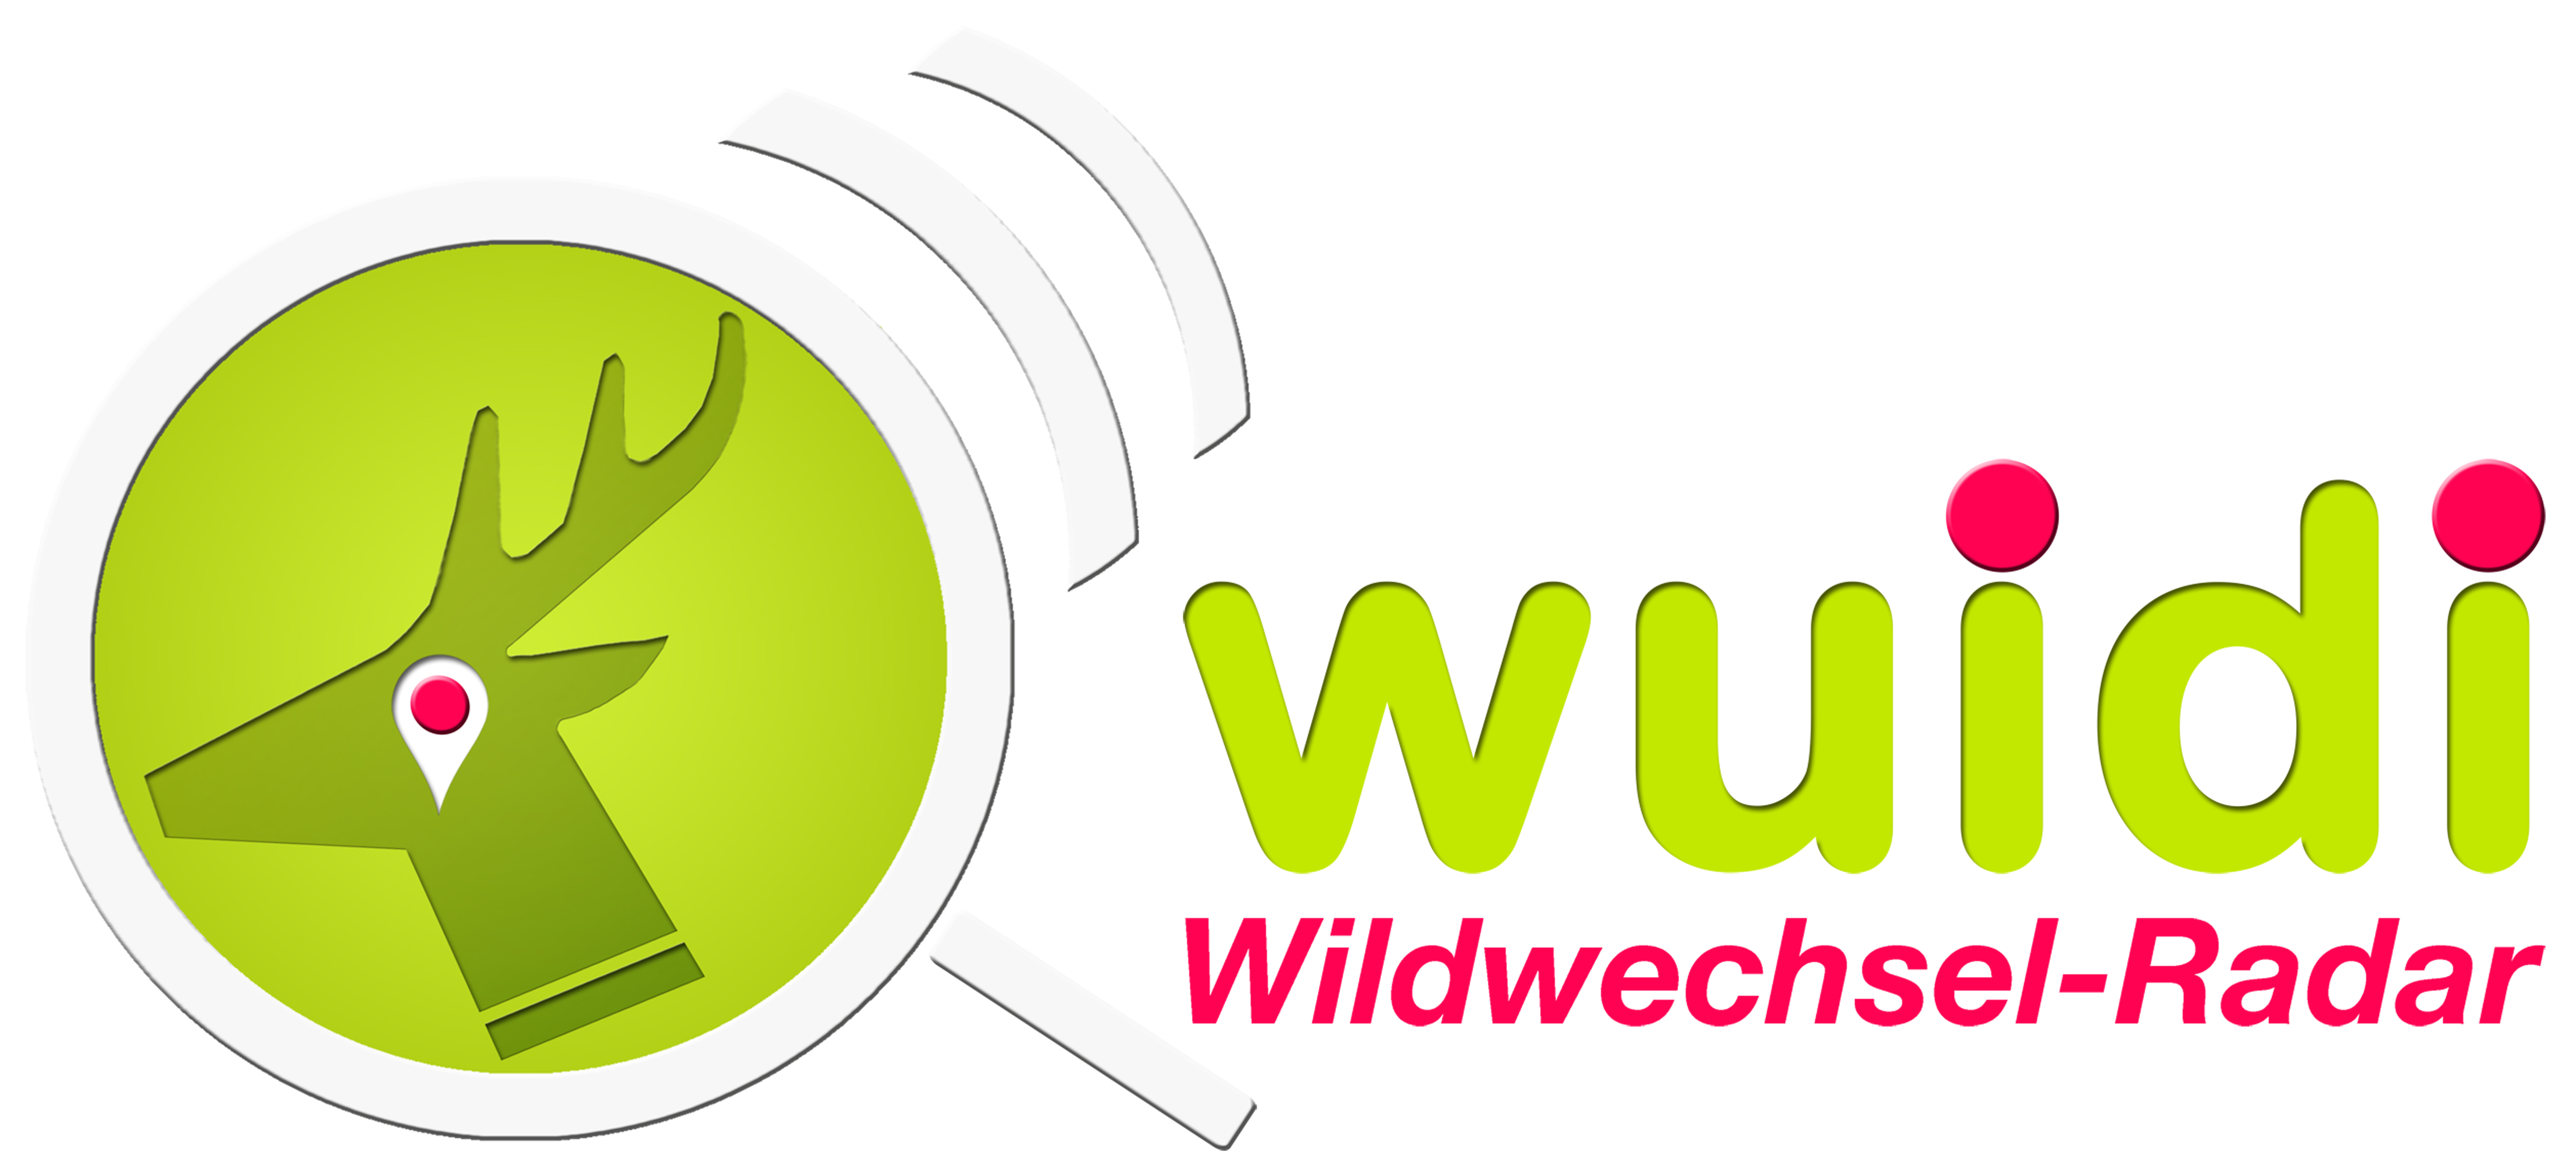 Wildwechsel-Radar „Wuidi“